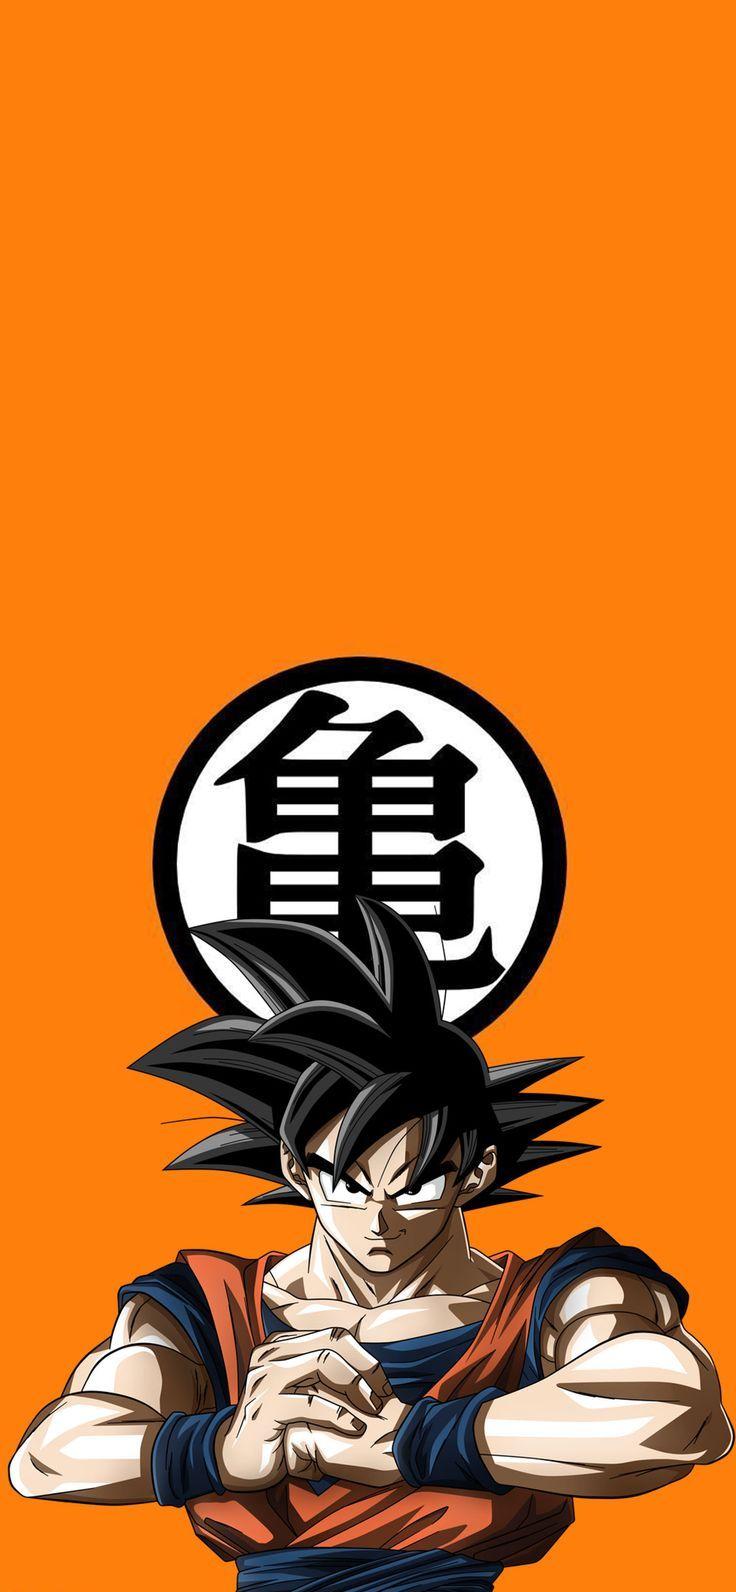 Wallpaper Anime, Goku, Super Saiyan, Saiyan, Zamasu, Background - Download  Free Image